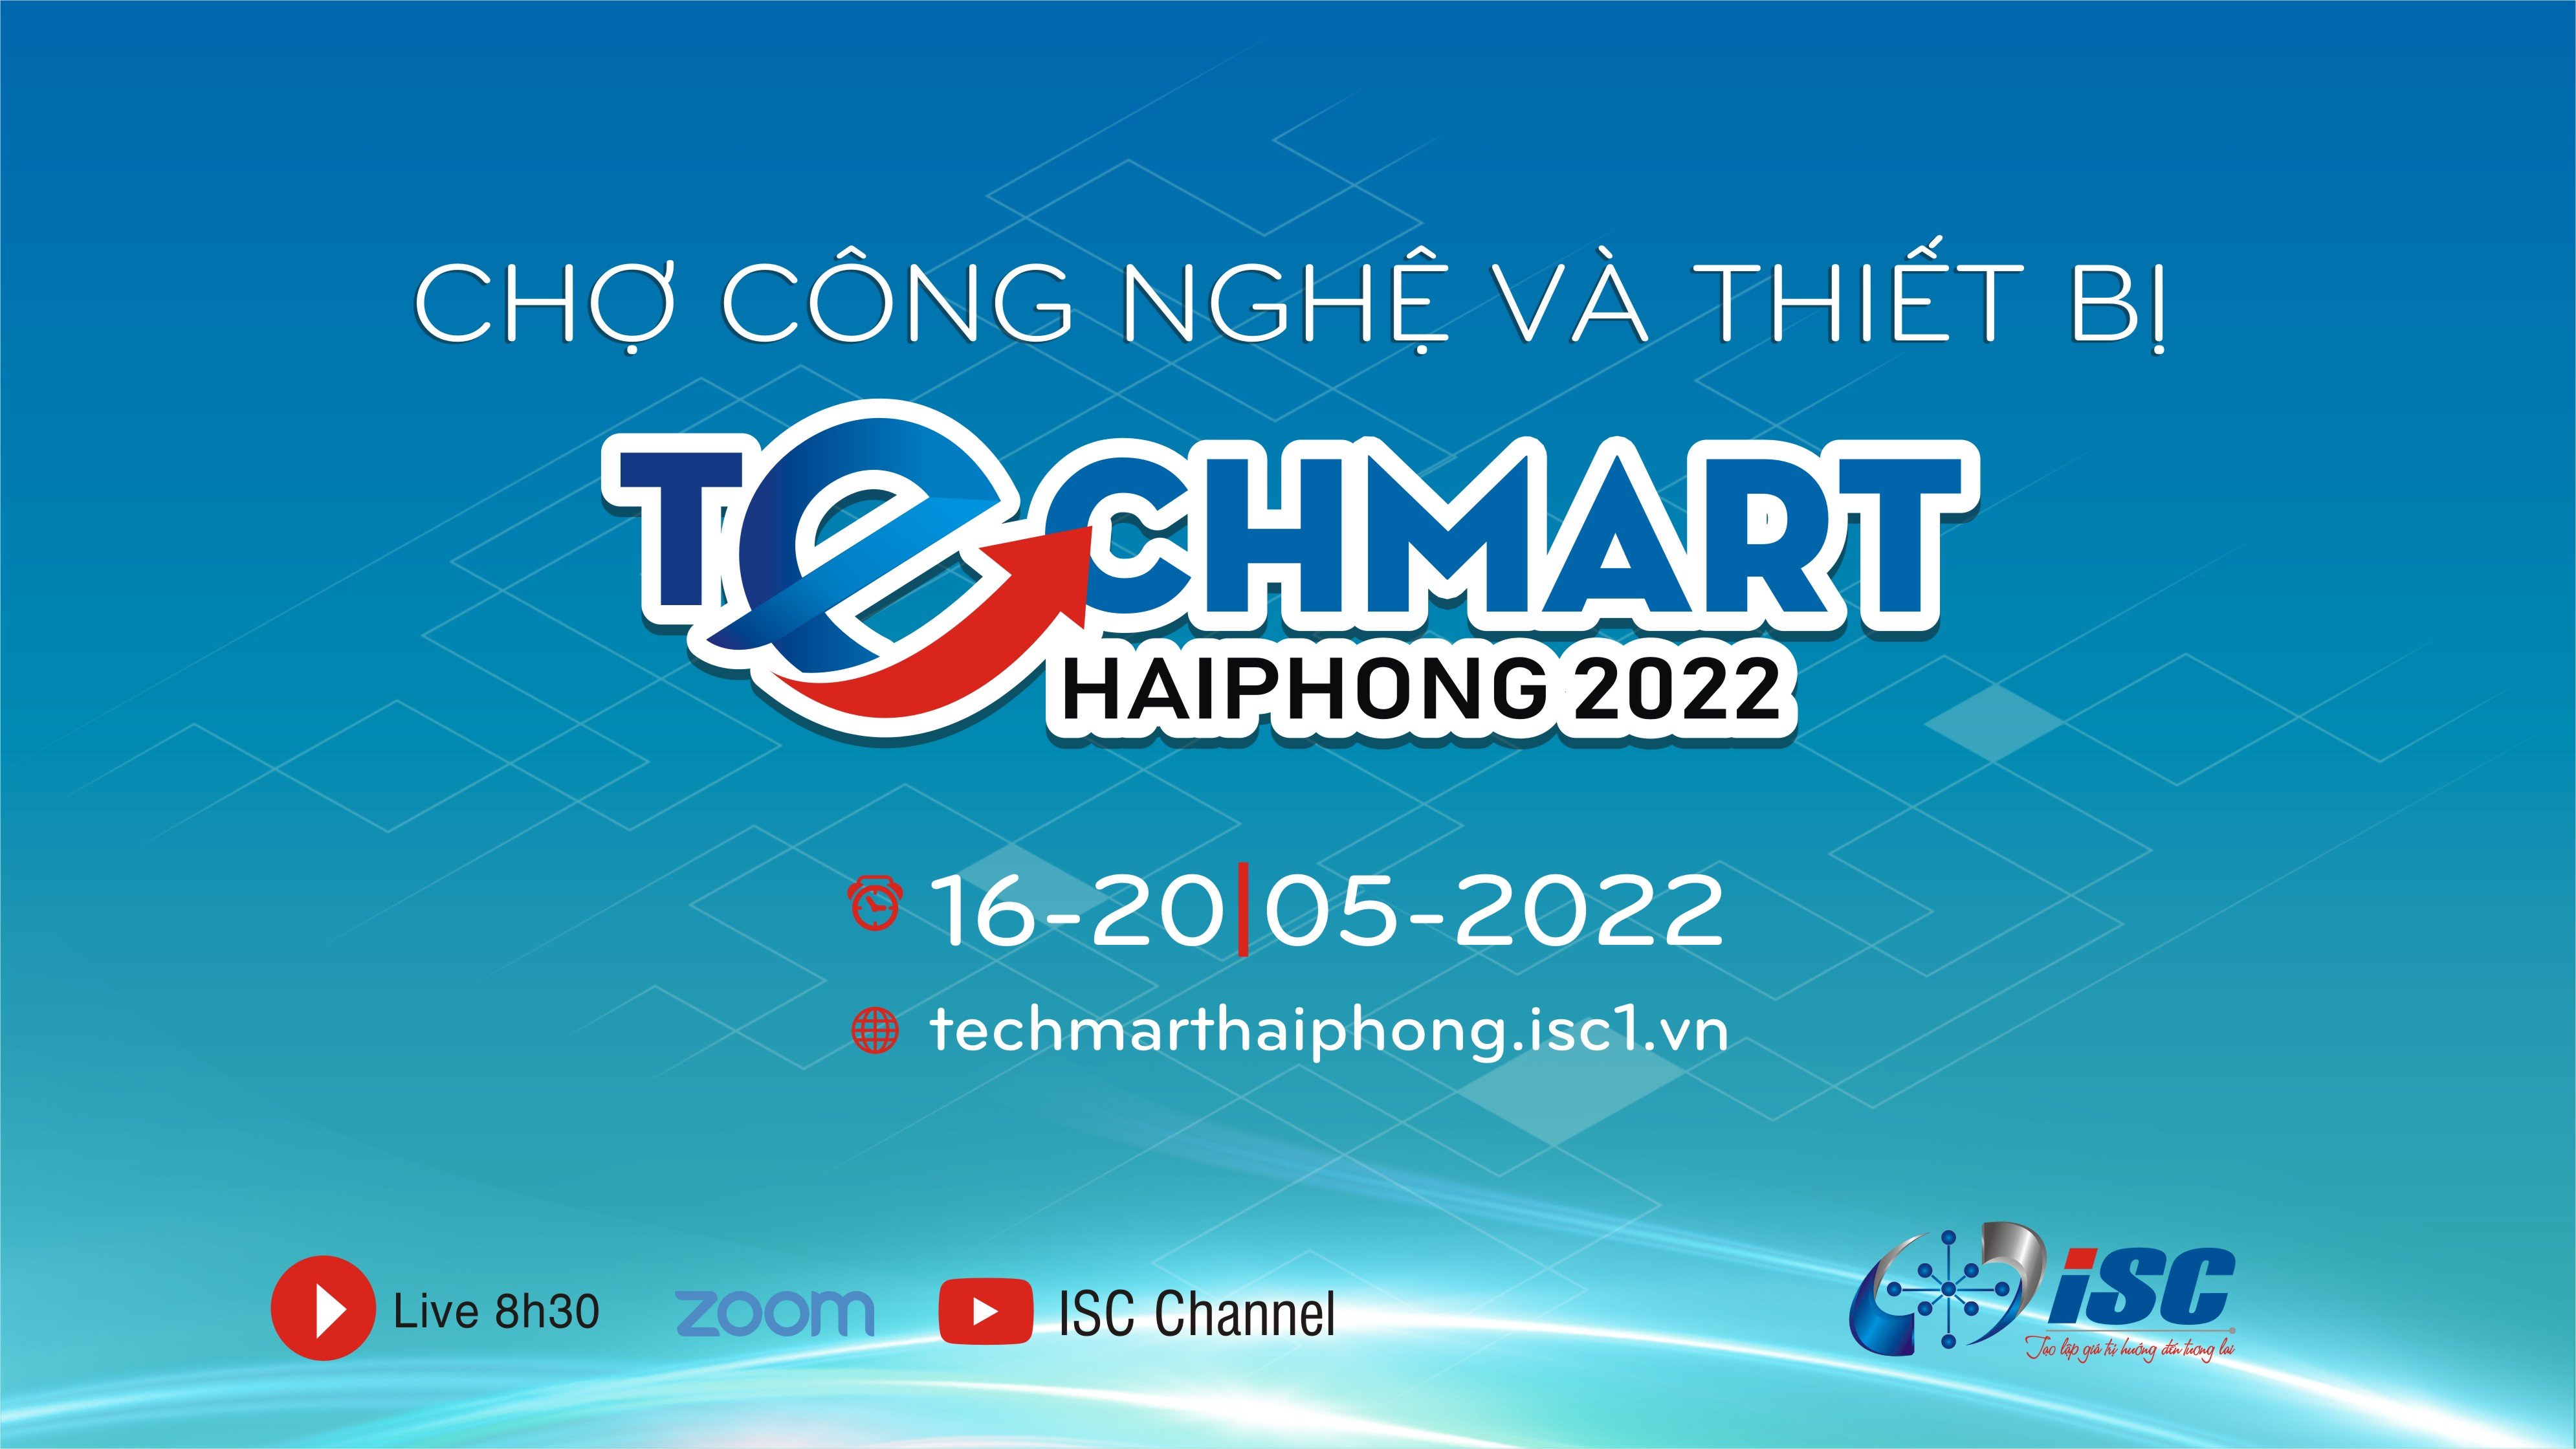 CHỢ CÔNG NGHỆ VÀ THIẾT BỊ HẢI PHÒNG NĂM 2022 (Techmart Haiphong 2022)